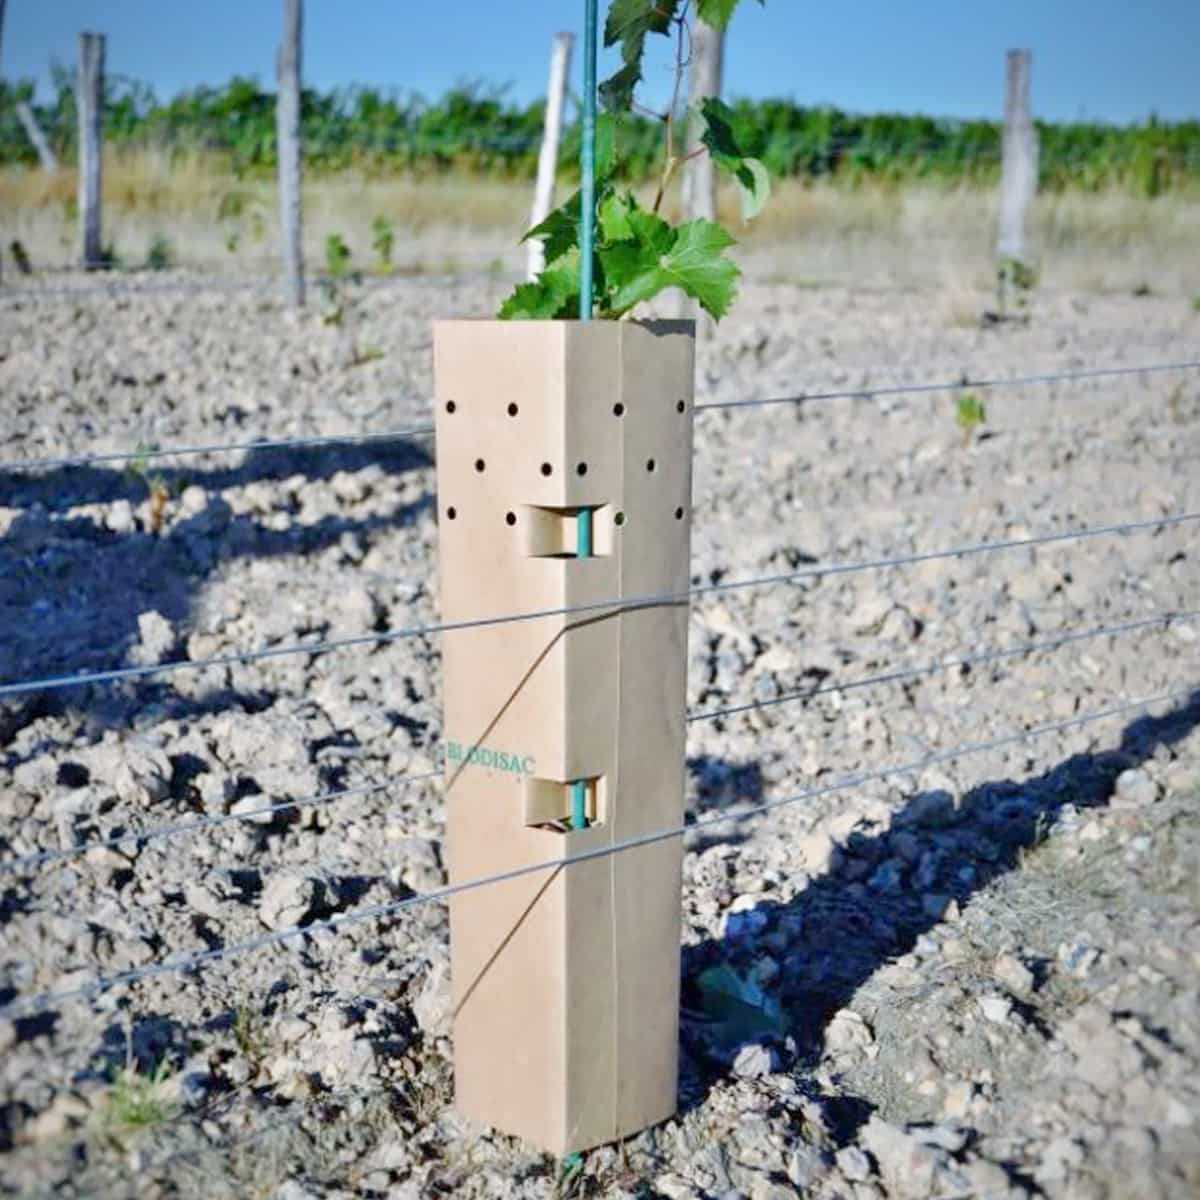 manchon de protection pour arbre ou vigne bisodisac biodégradable 50 cm  fabriqué